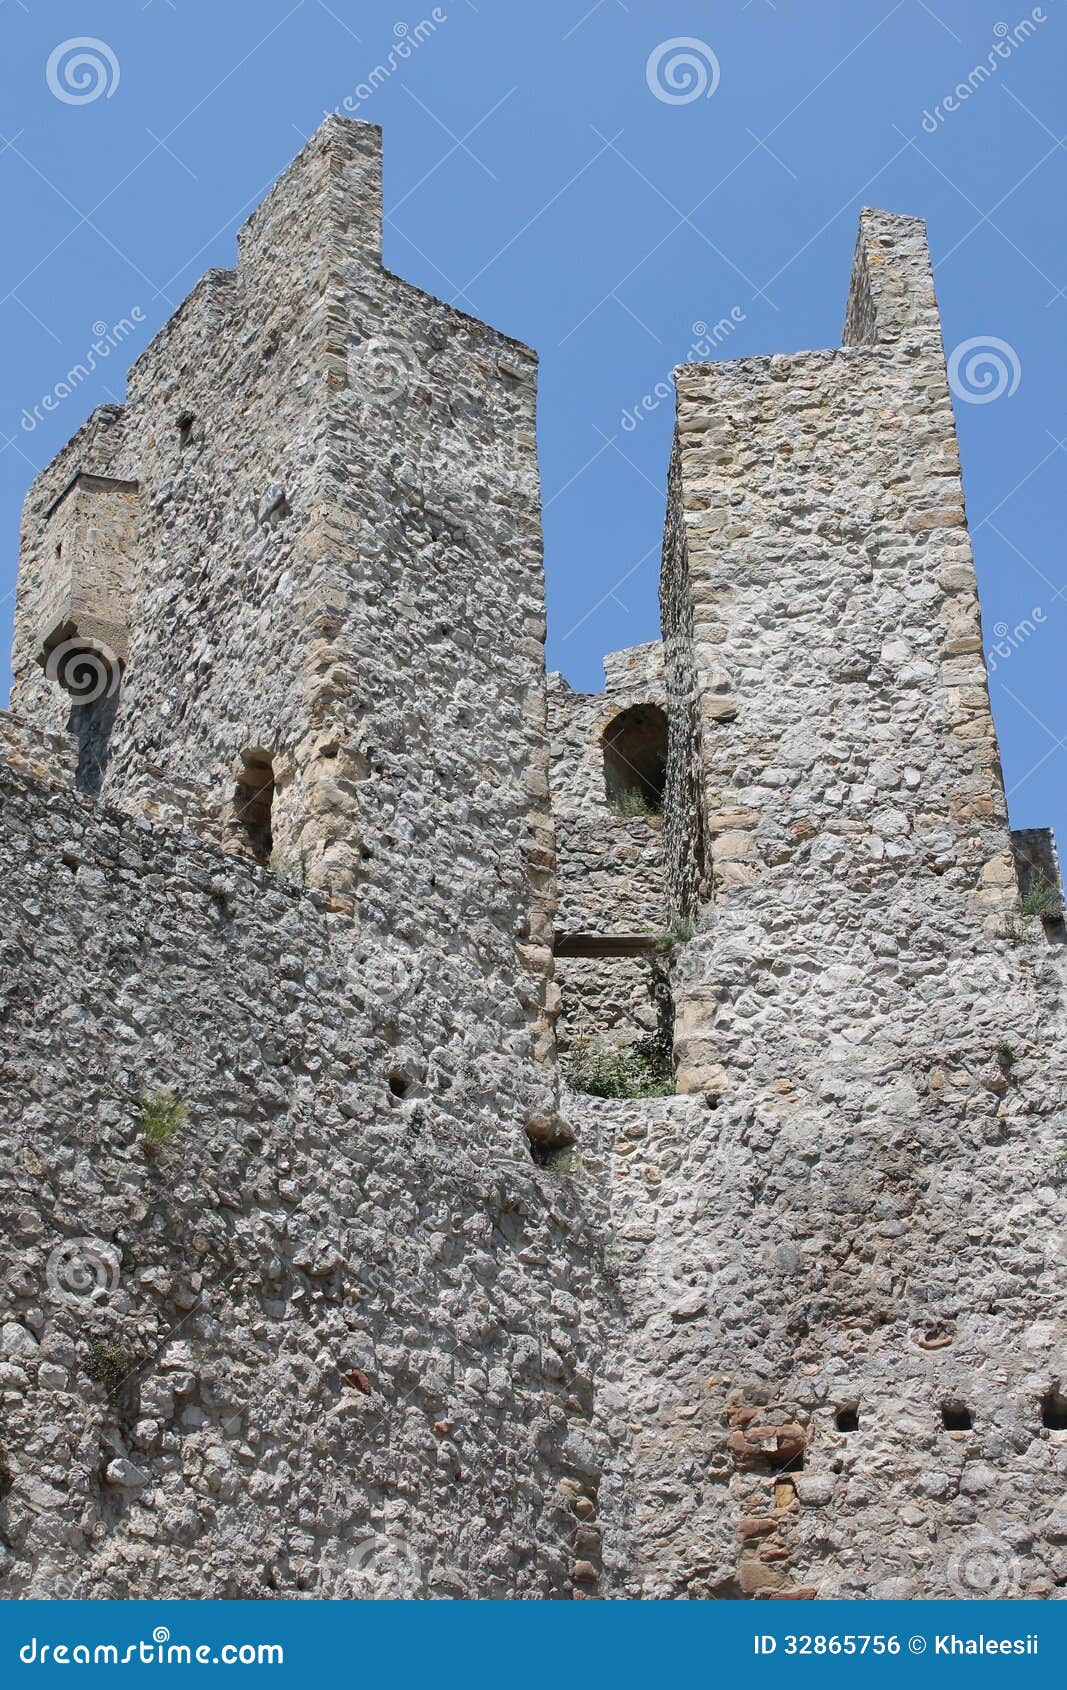 stone wall in monastery manasija